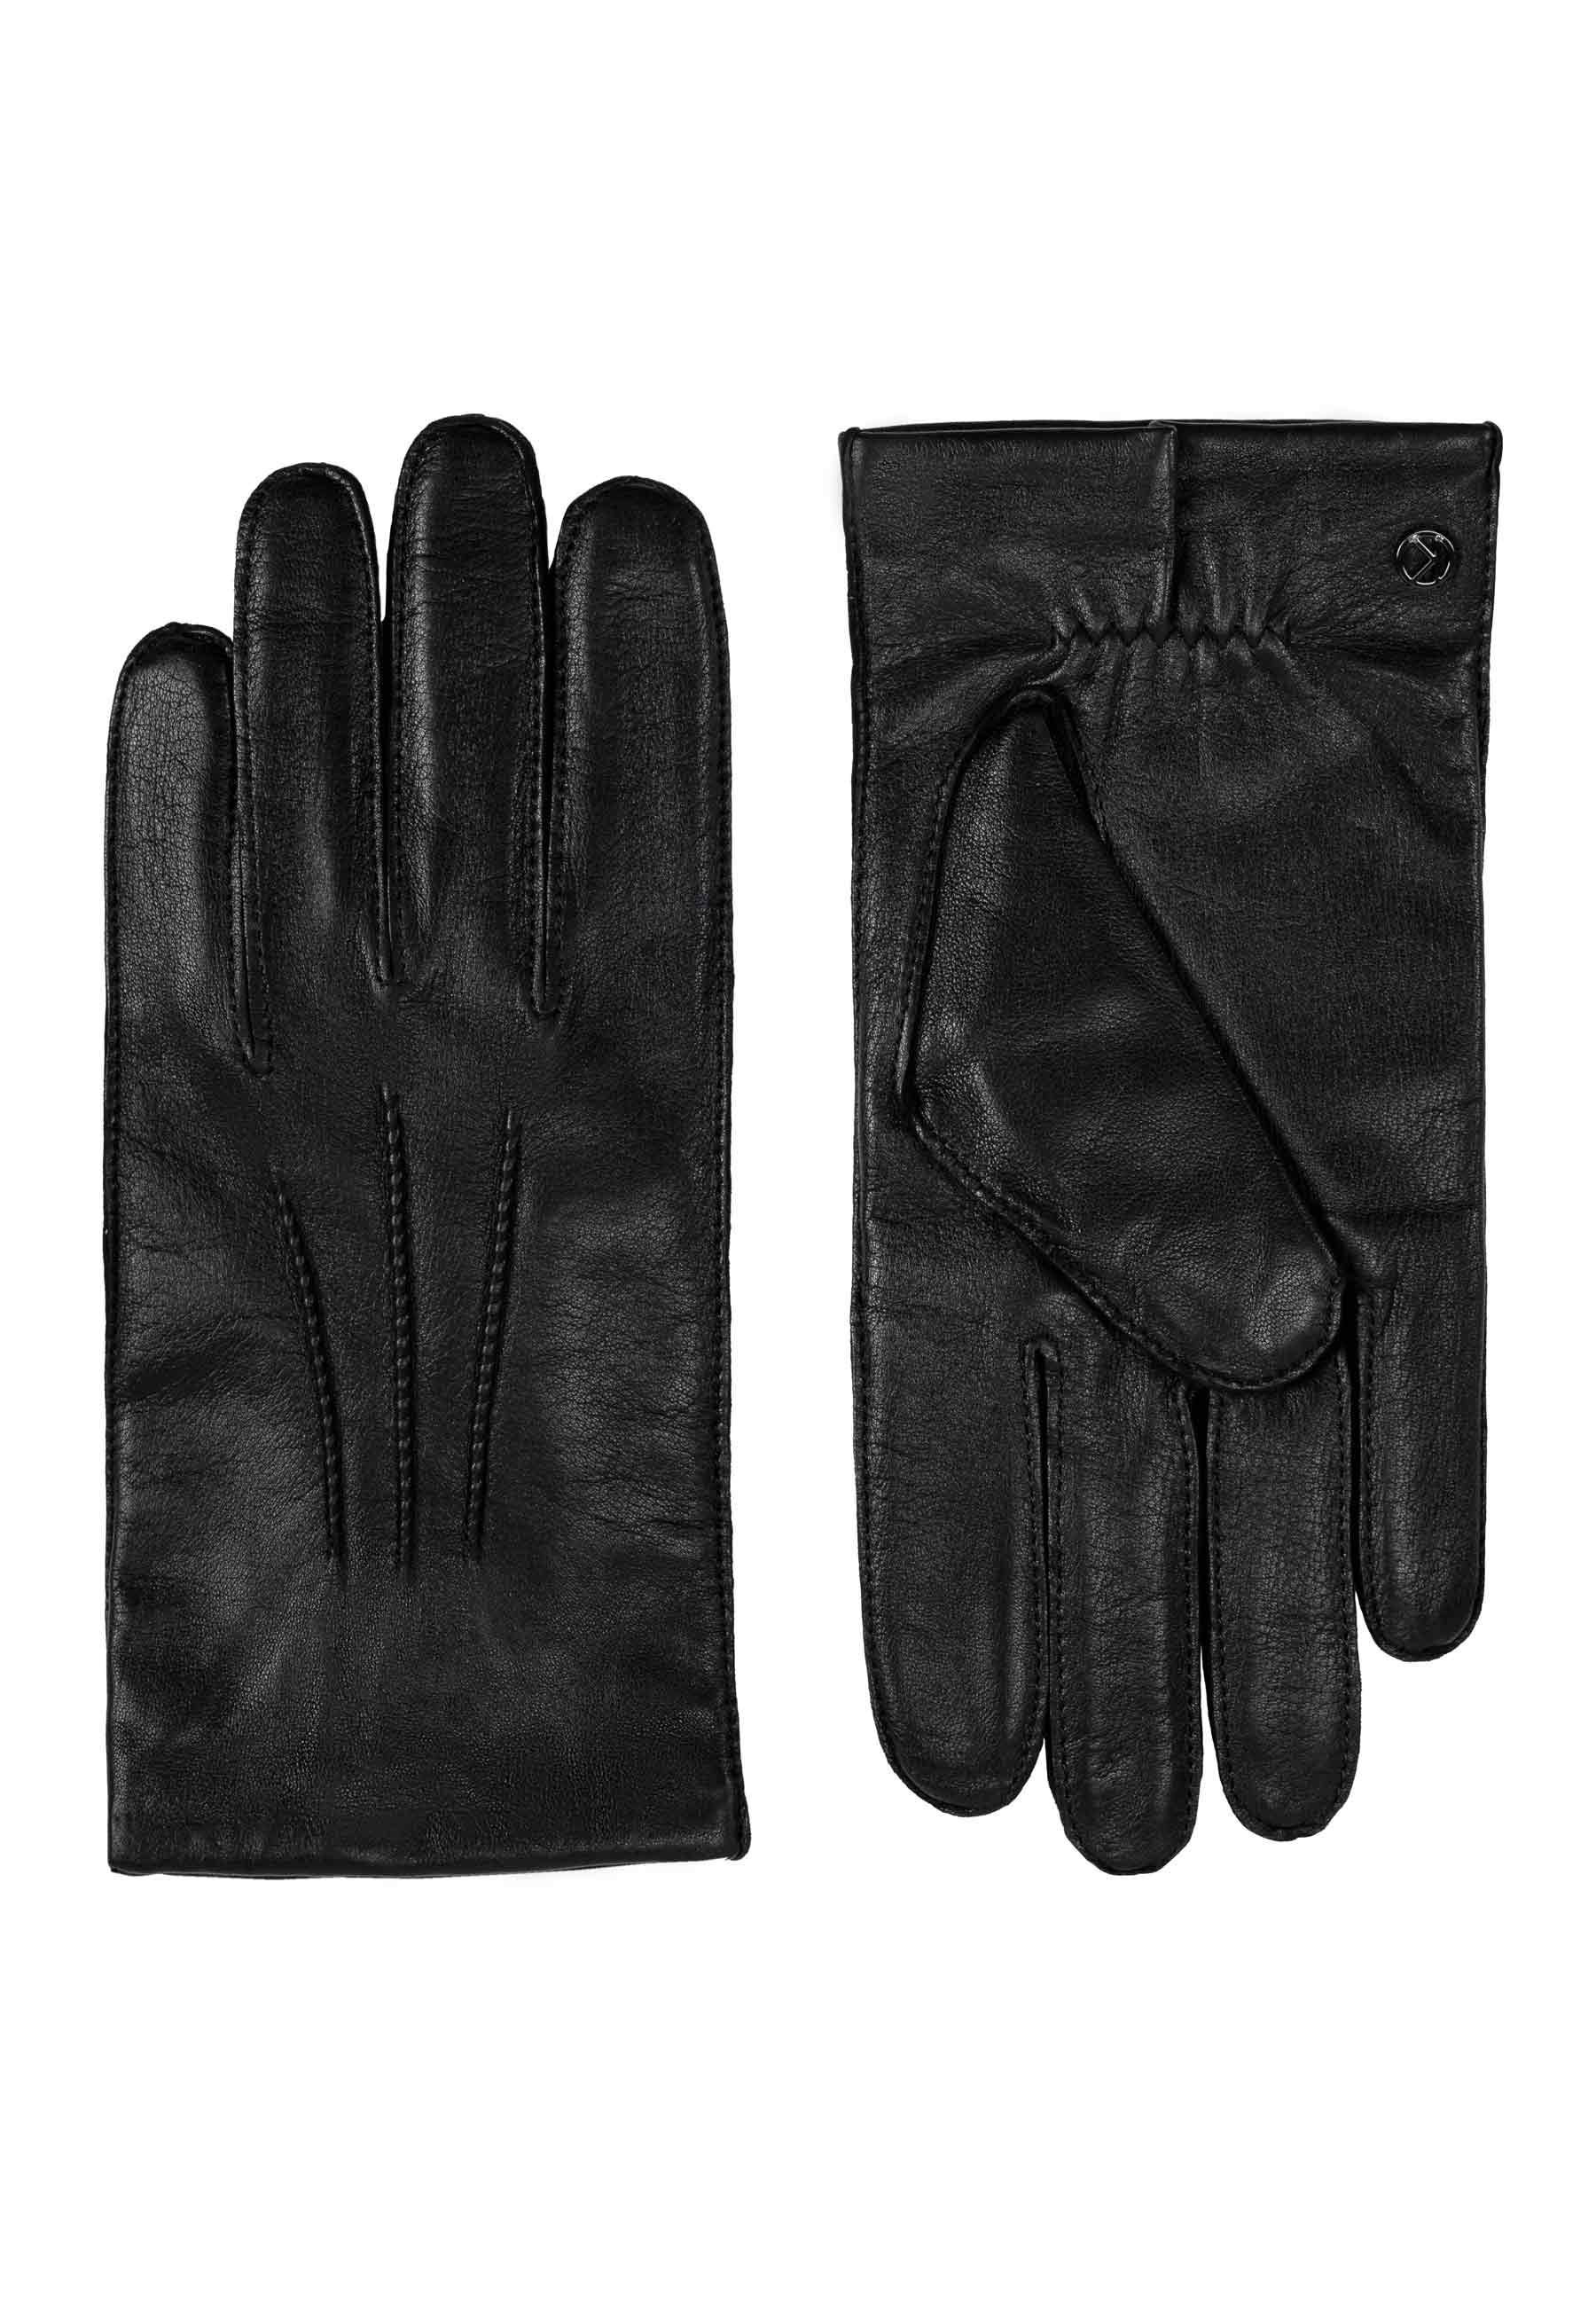 Men's gloves 'Paul' black